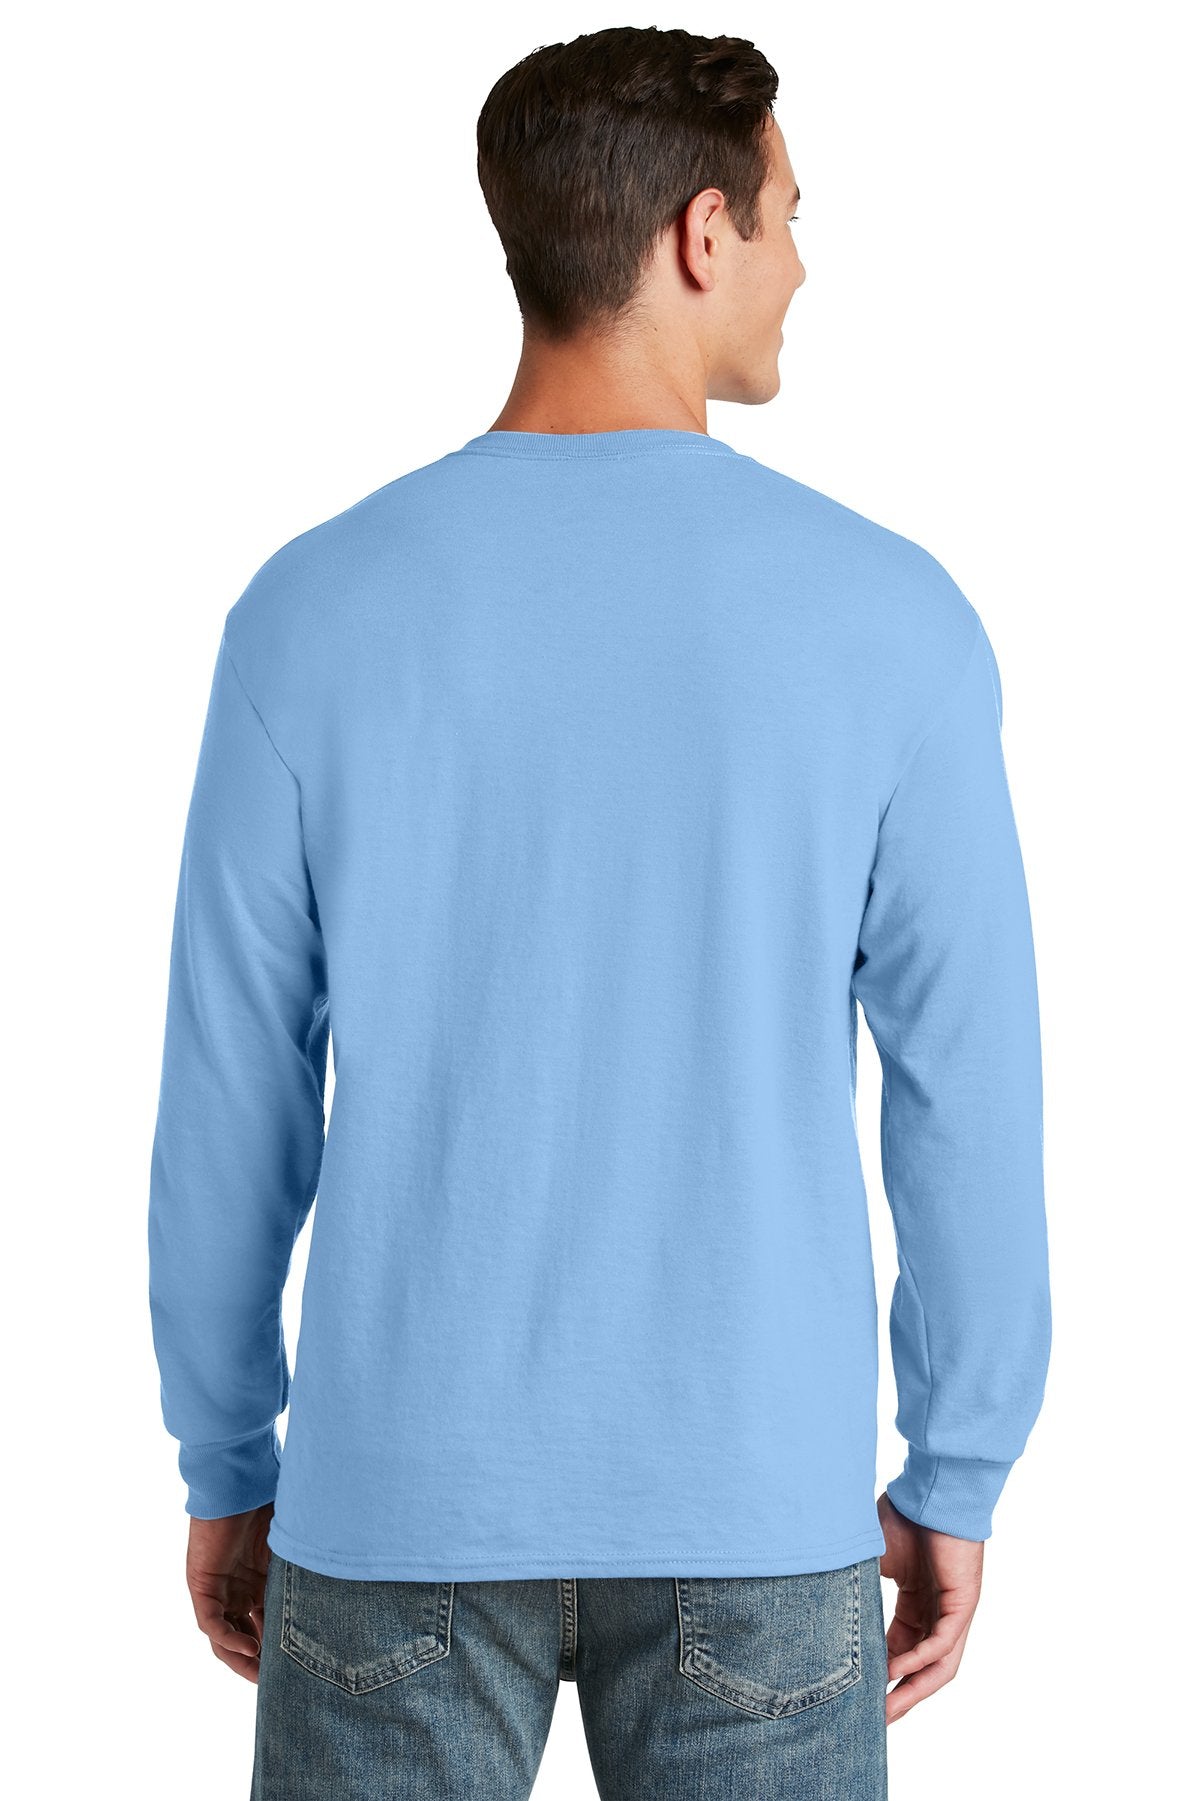 Jerzees Dri-Power 50/50 Cotton/Poly Long Sleeve T-Shirt 29LS Light Blue